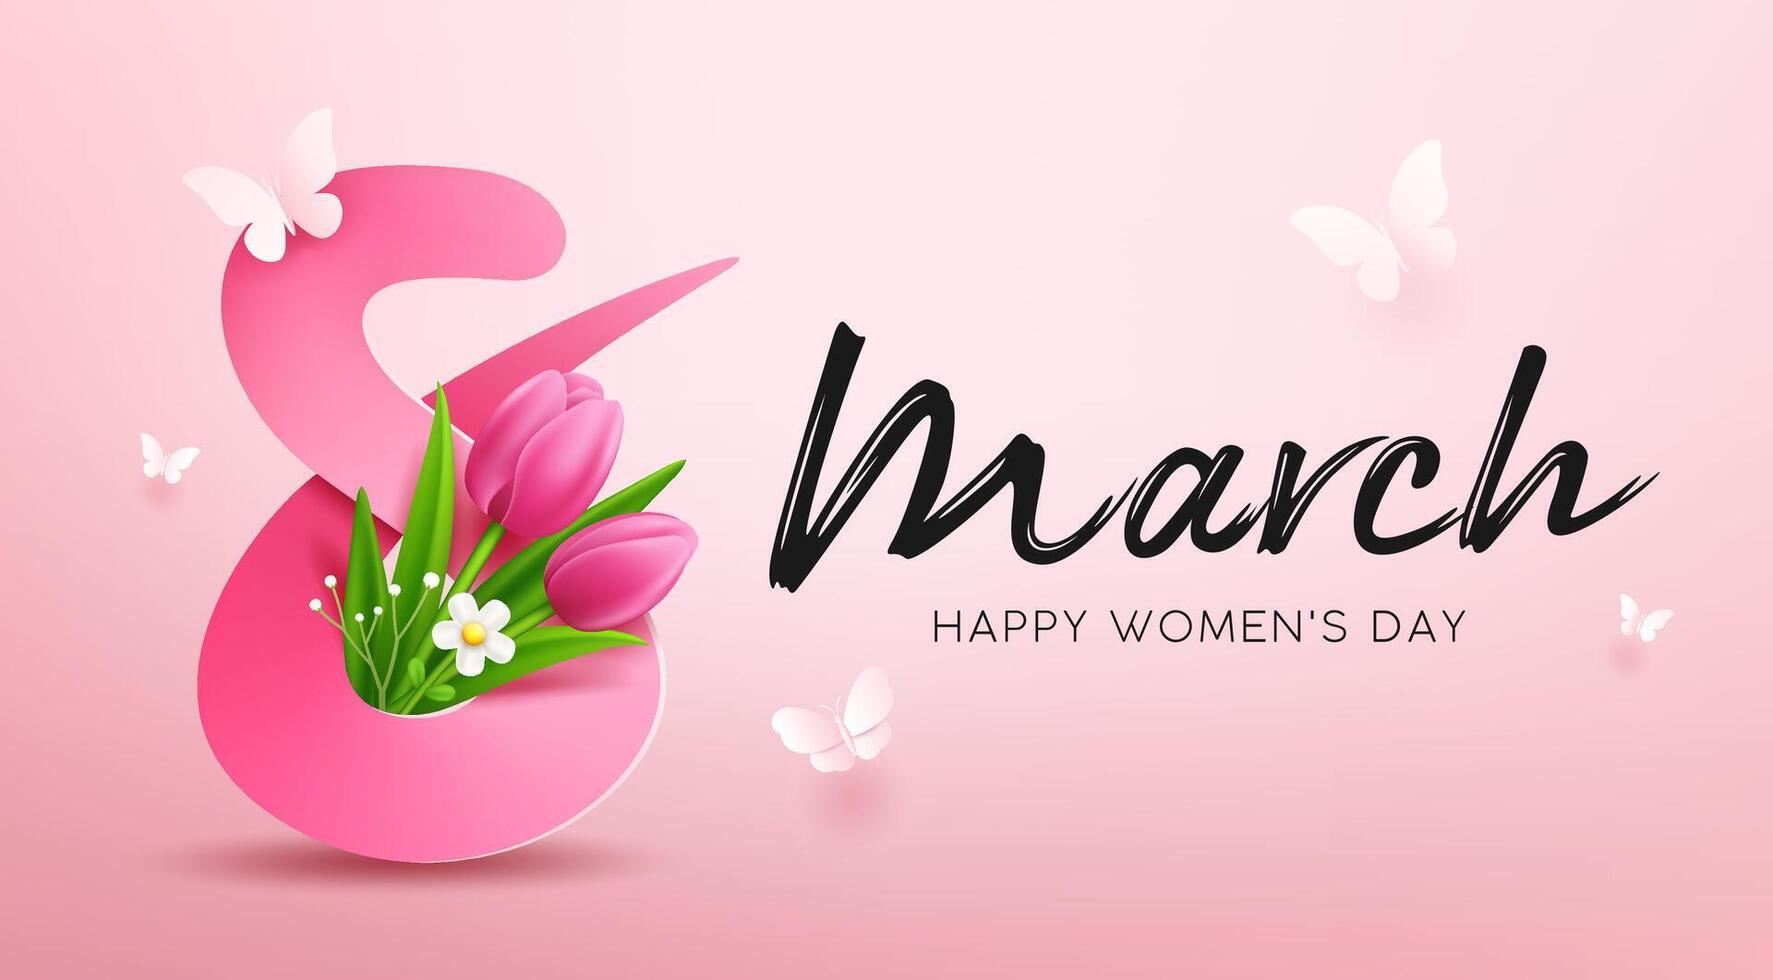 8 Marsch, glücklich Damen Tag mit Tulpe Blumen und Schmetterling, Banner Konzept Design auf Rosa Hintergrund, eps10 Vektor Illustration.